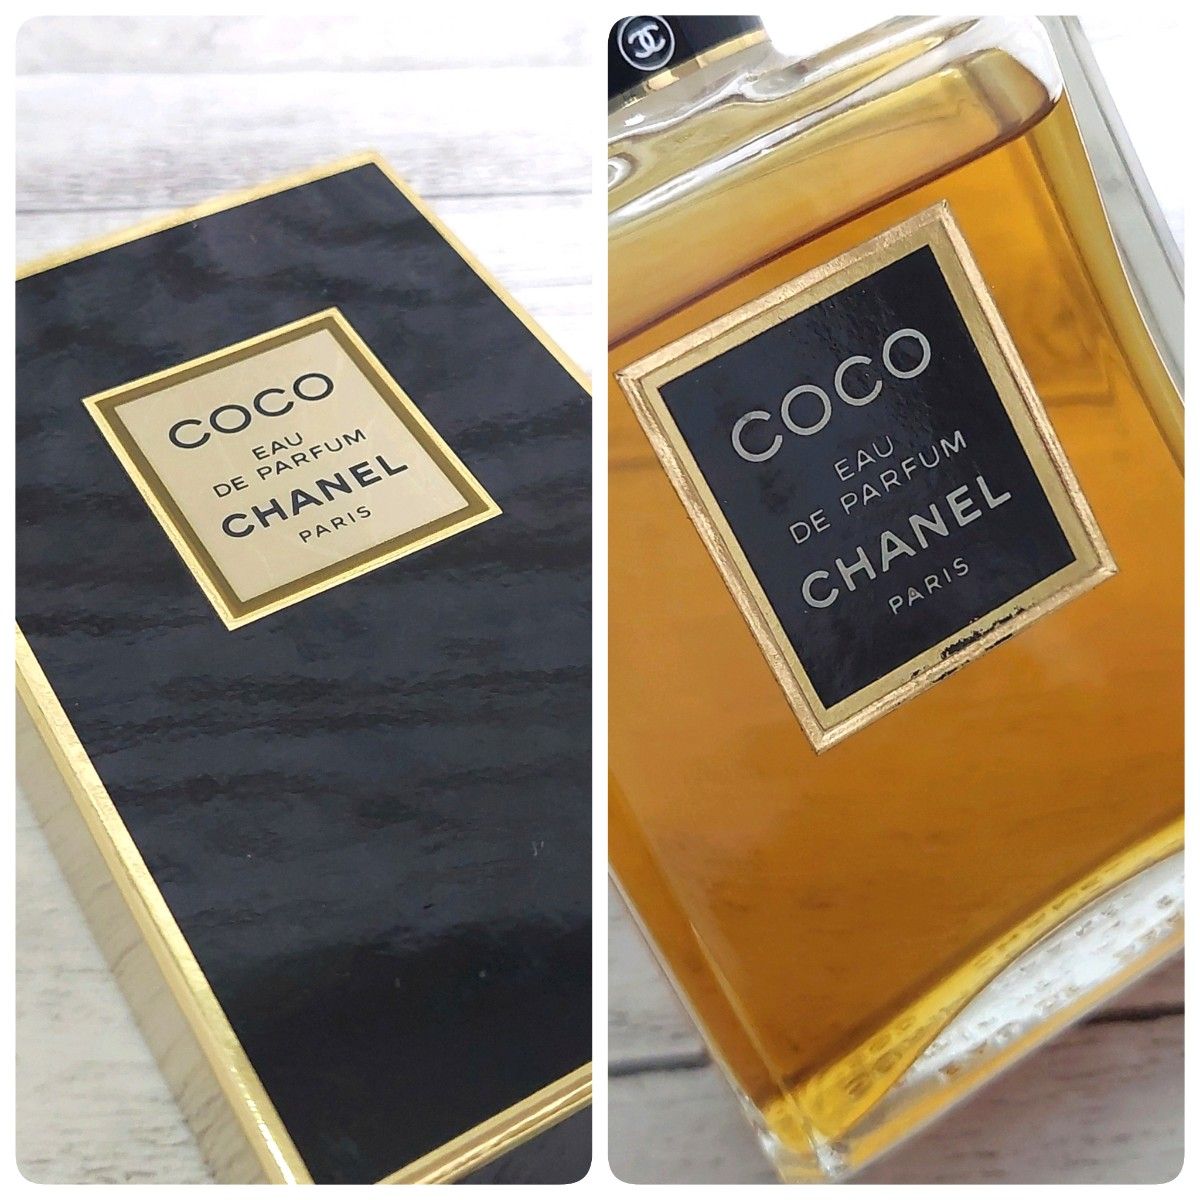 【残量多】CHANEL シャネル COCO ココ 香水 EDP オードパルファム EAU DE PARFUM オードゥパルファム